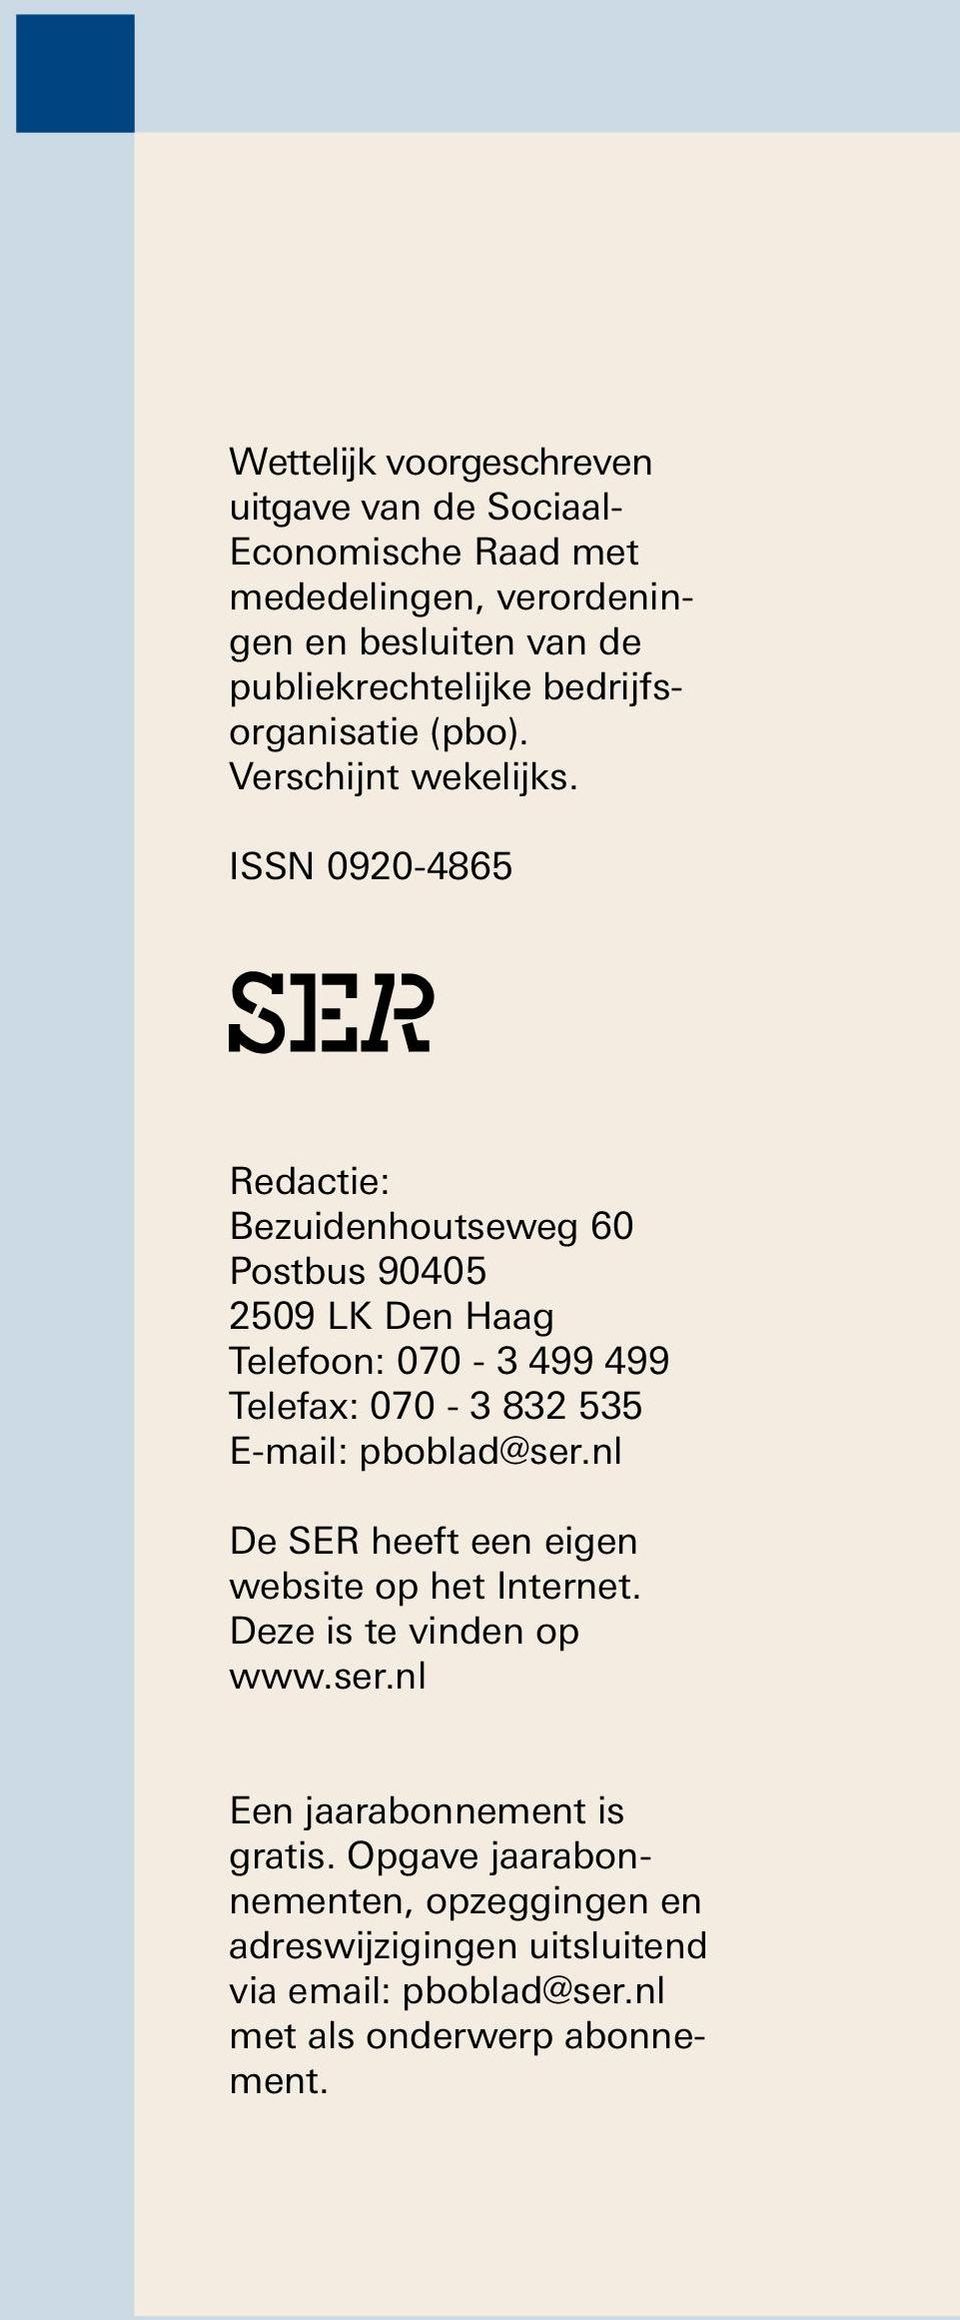 ISSN 0920-4865 Sociaal- Economische Raad Redactie: Bezuidenhoutseweg 60 Postbus 90405 2509 LK Den Haag Telefoon: 070-3 499 499 Telefax: 070-3 832